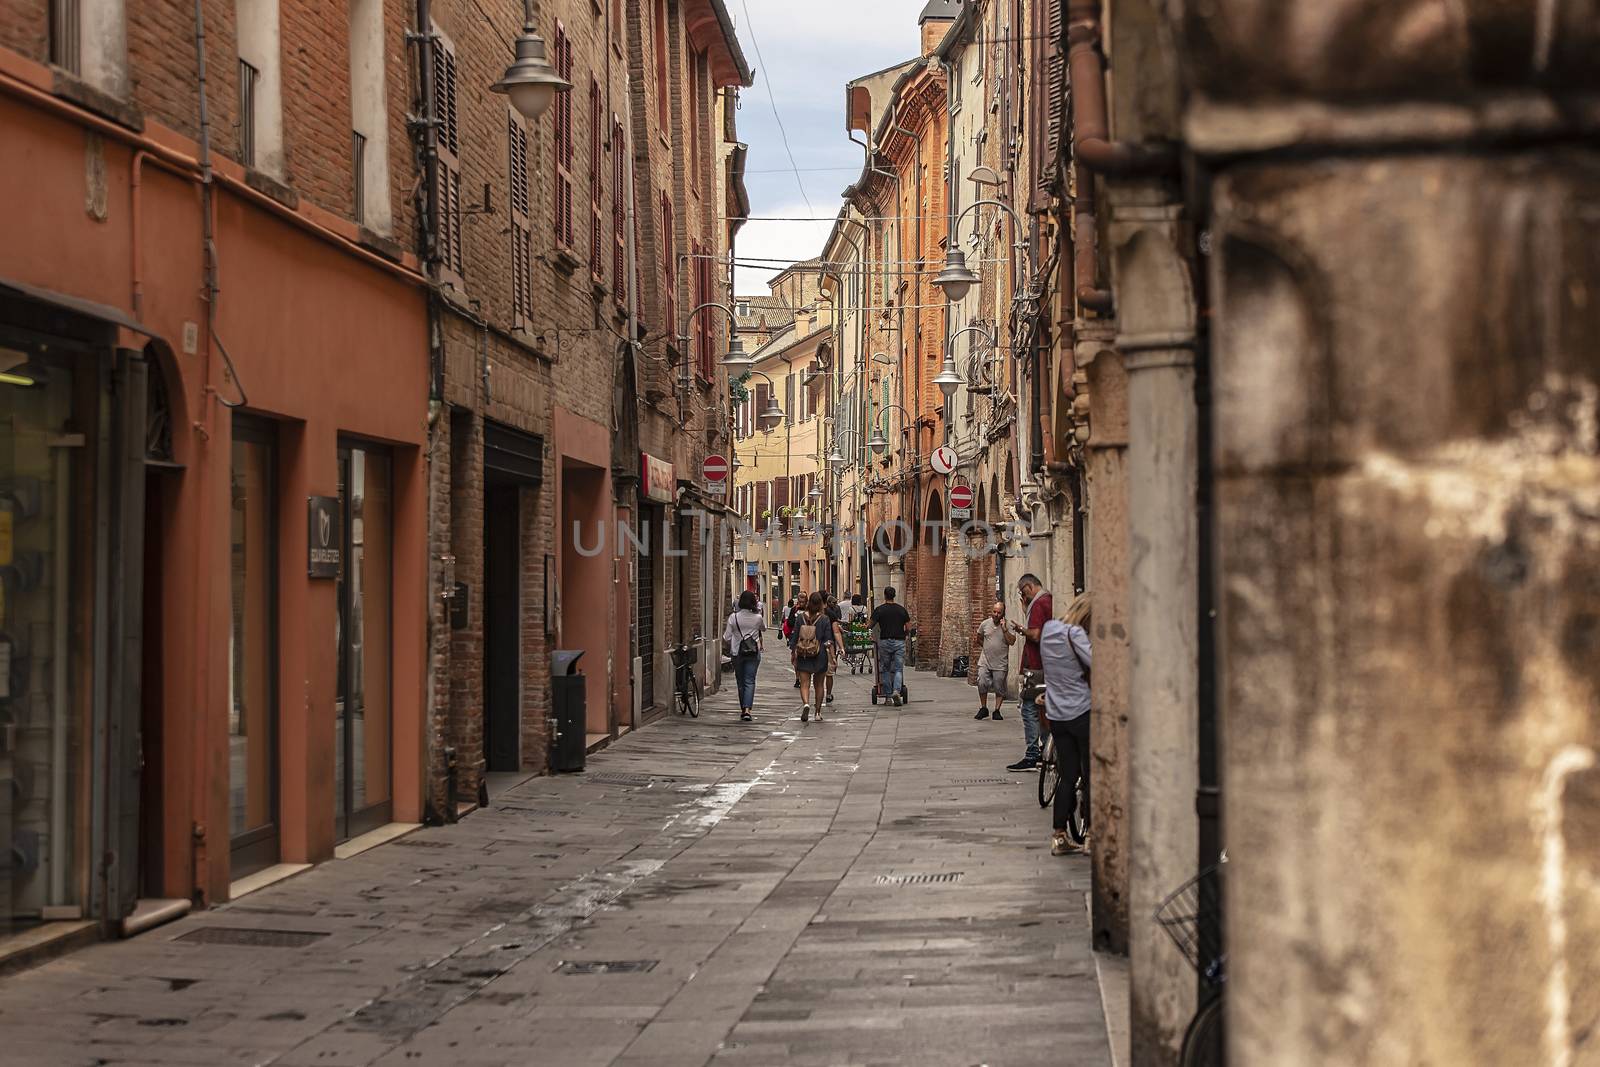 FERRARA, ITALY 29 JULY 2020 : Alley of Ferrara in Italy full of people walking